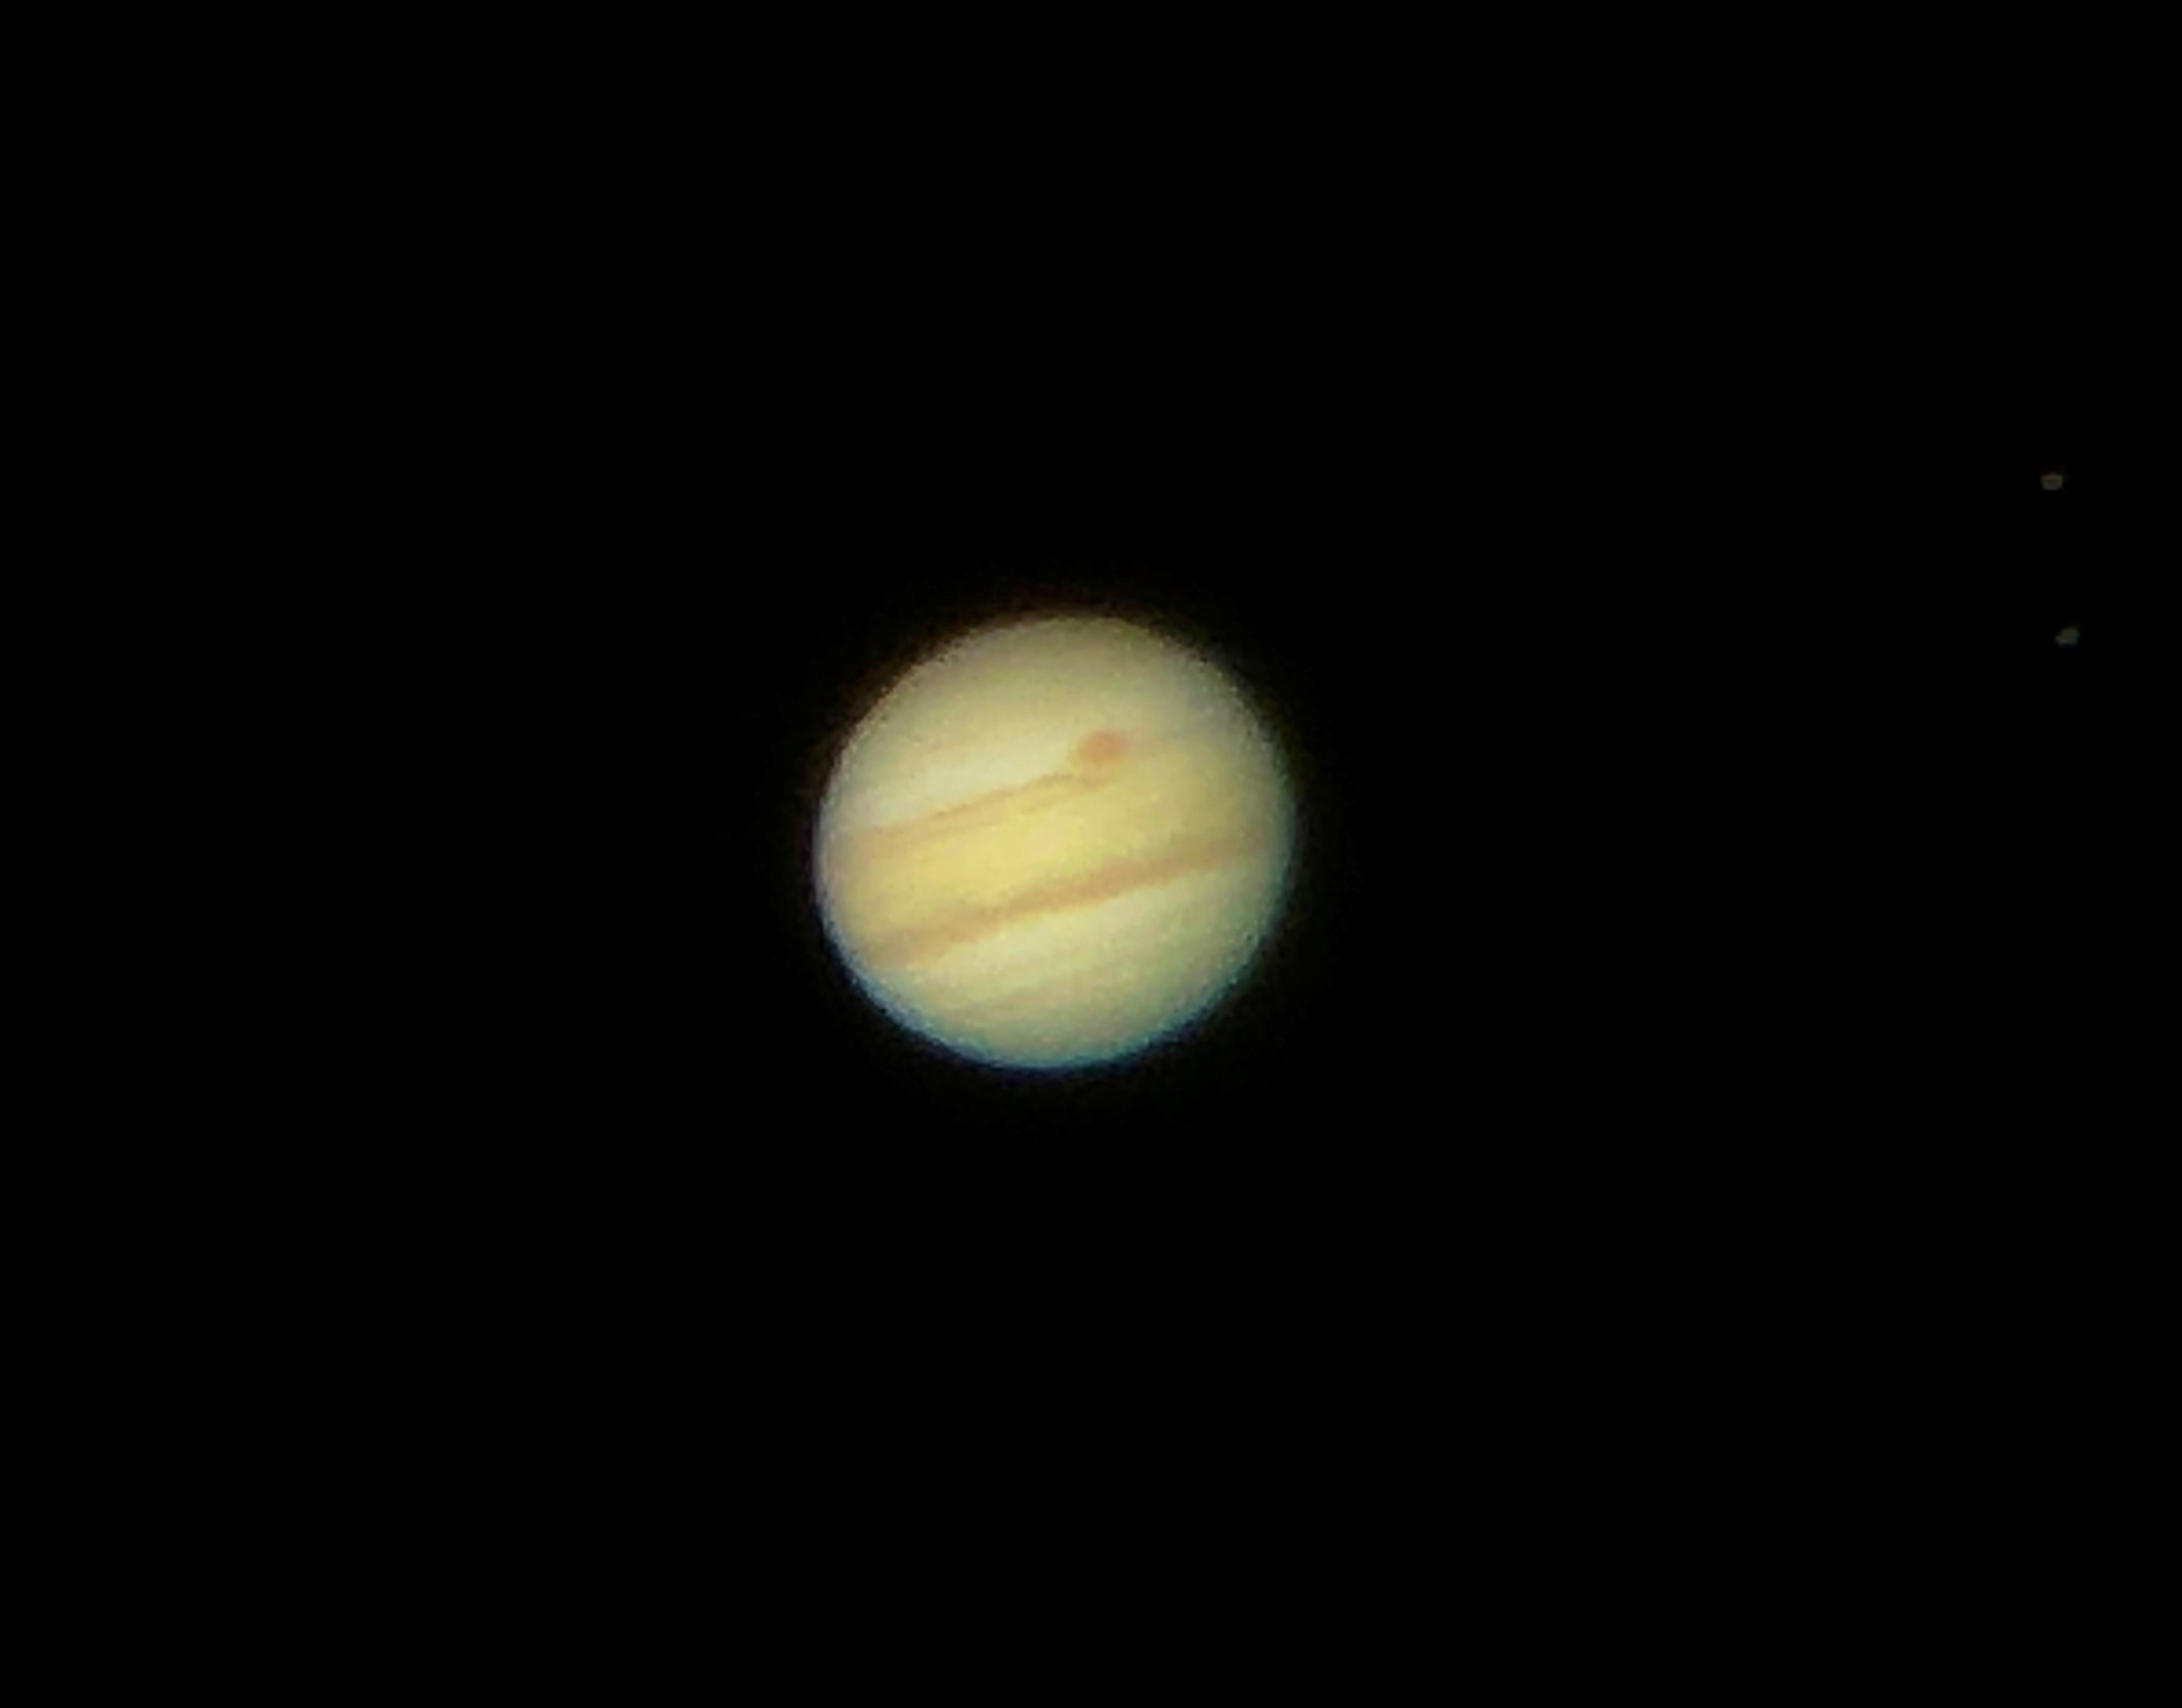 Image of Jupiter taken through a Dobsonian Telescope